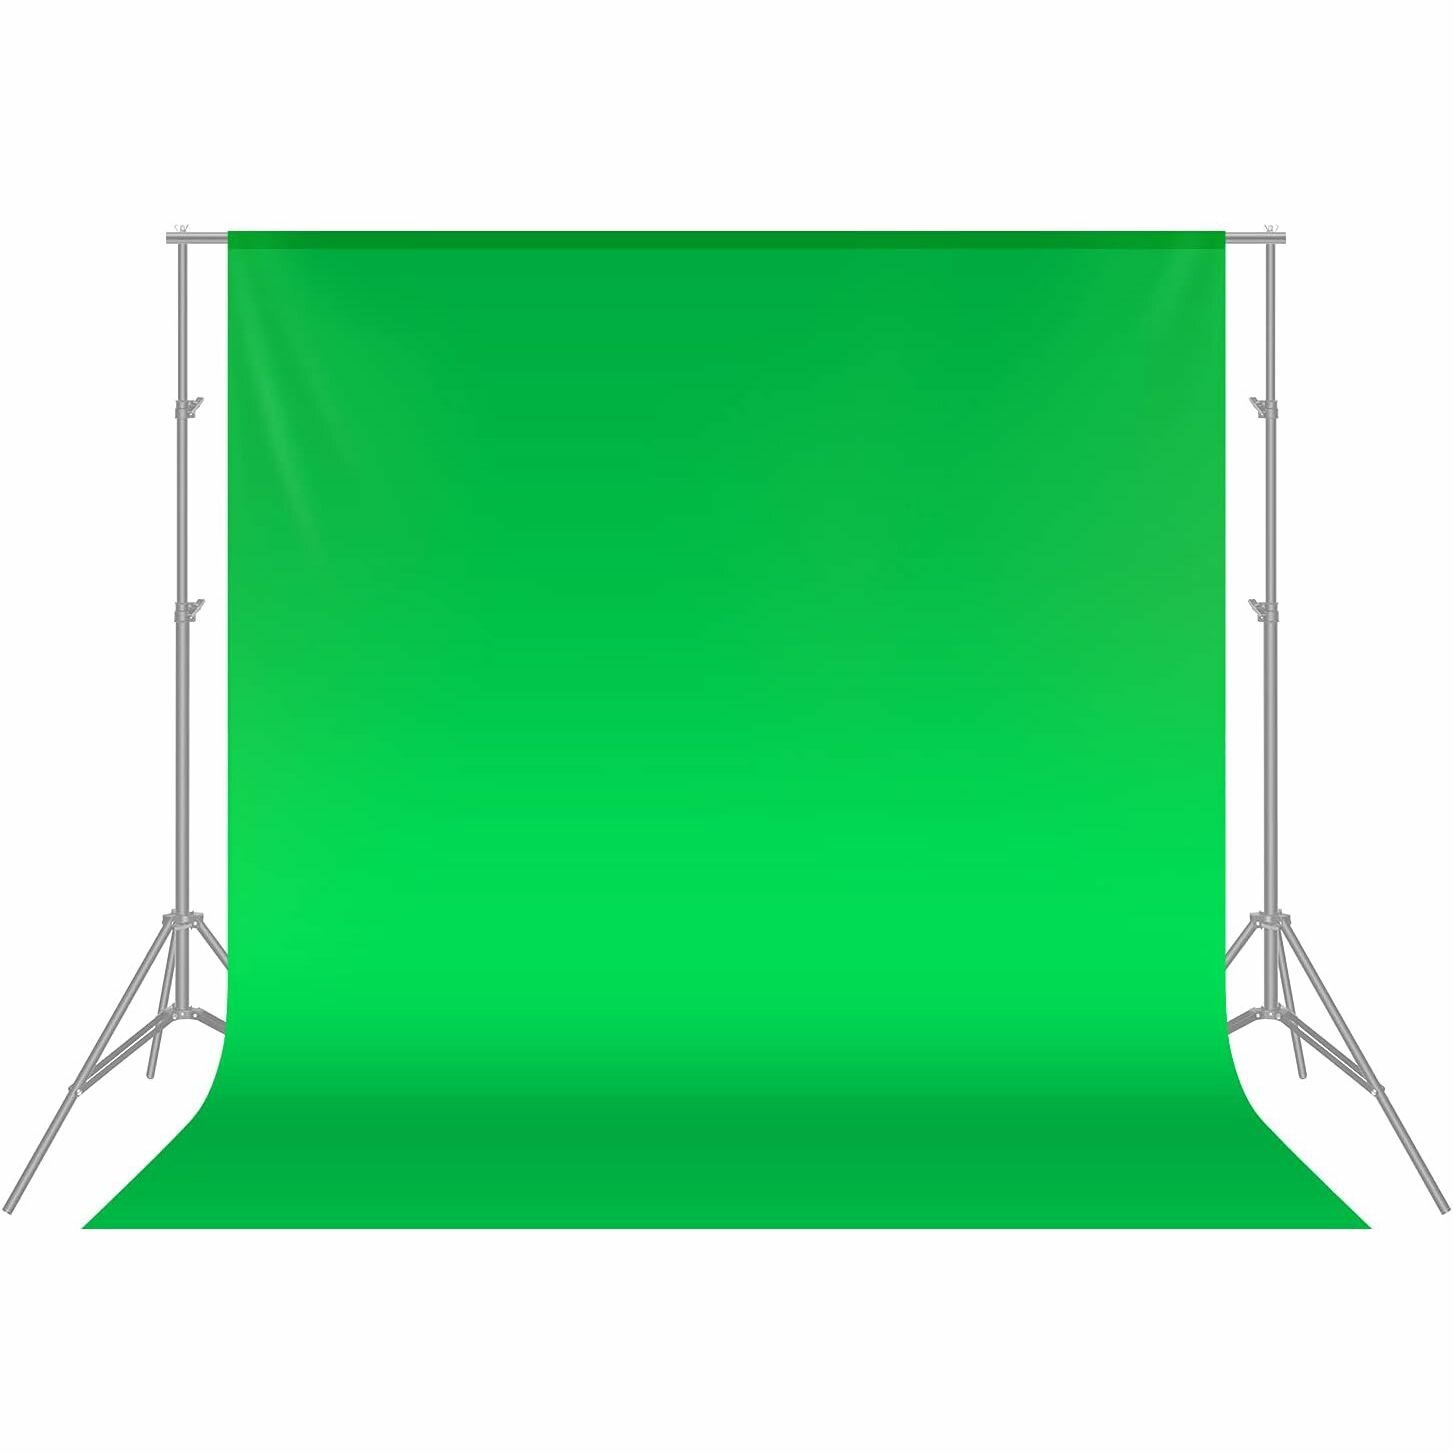 Фон для фото студийный NEEWER 1.8x2.8 м зеленый